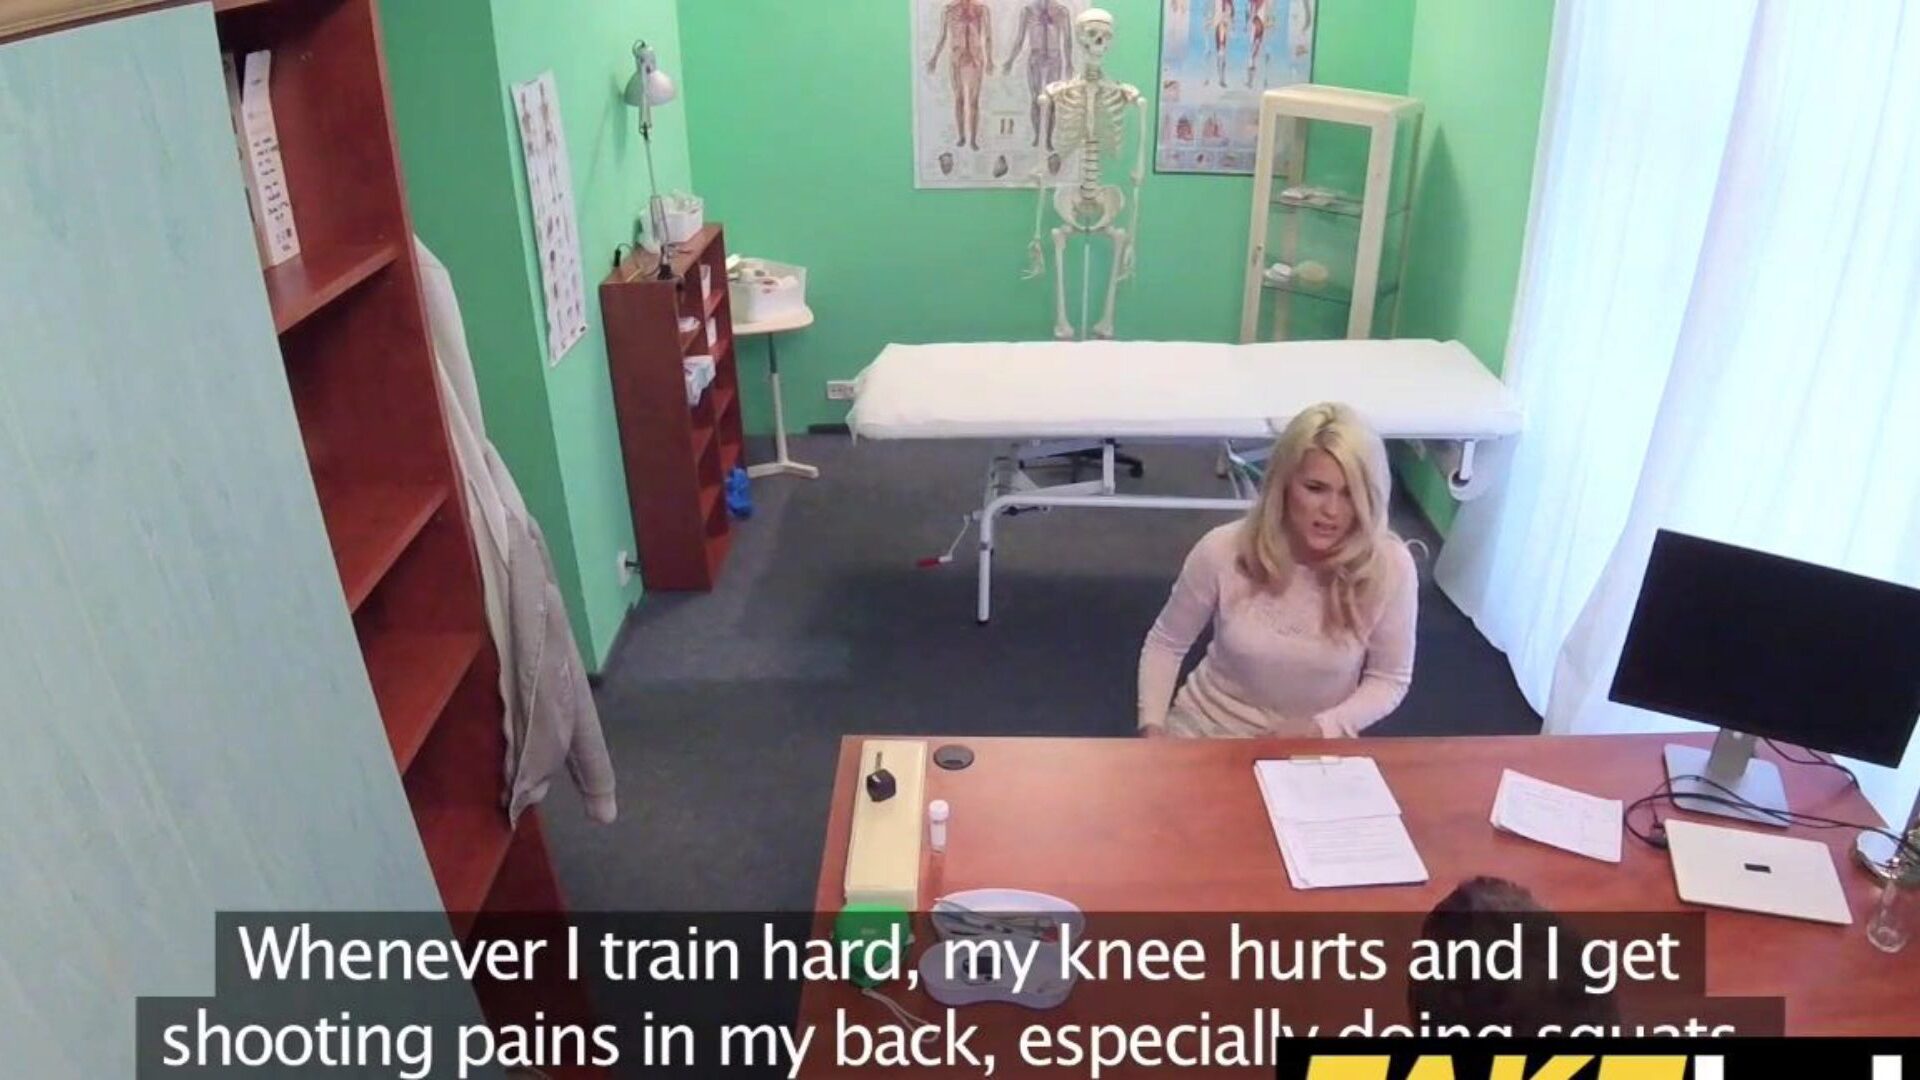 falske hospital beskidte medic giver blond tjekkisk hottie fugtige bukser